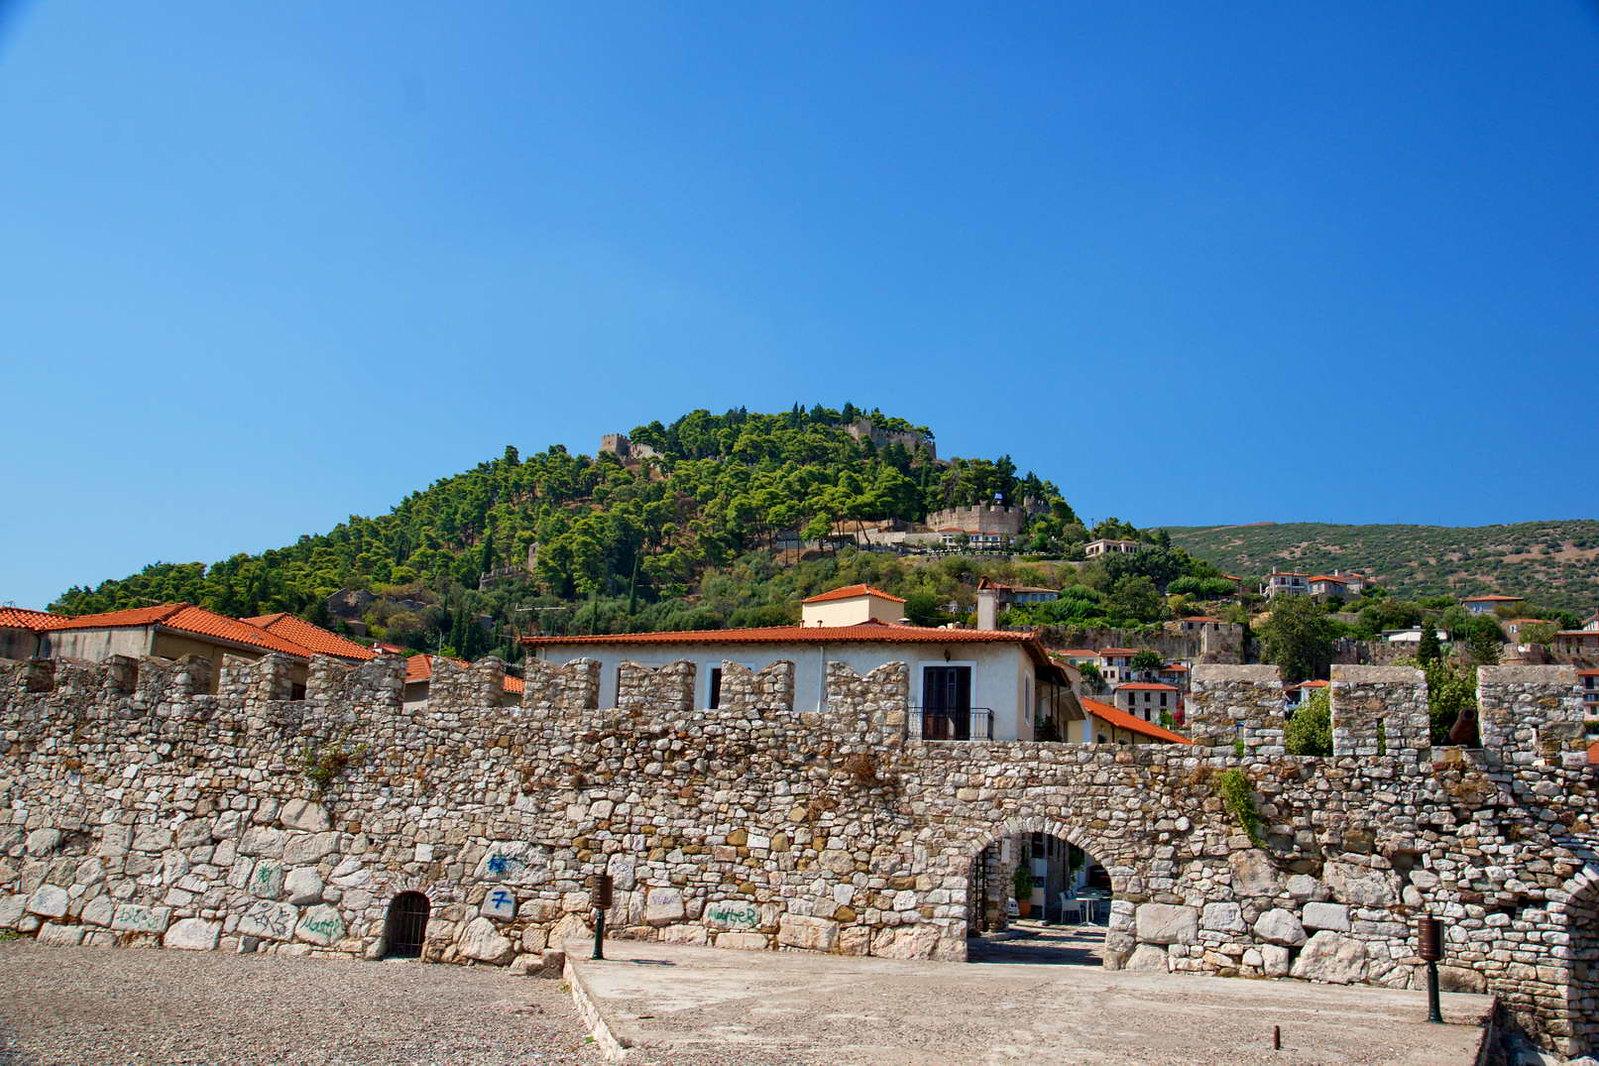 Πανοραμική φωτογραφία από το κάστρο με το λιμάνι και τον οικισμό ναυπακτοσ αξιοθεατα